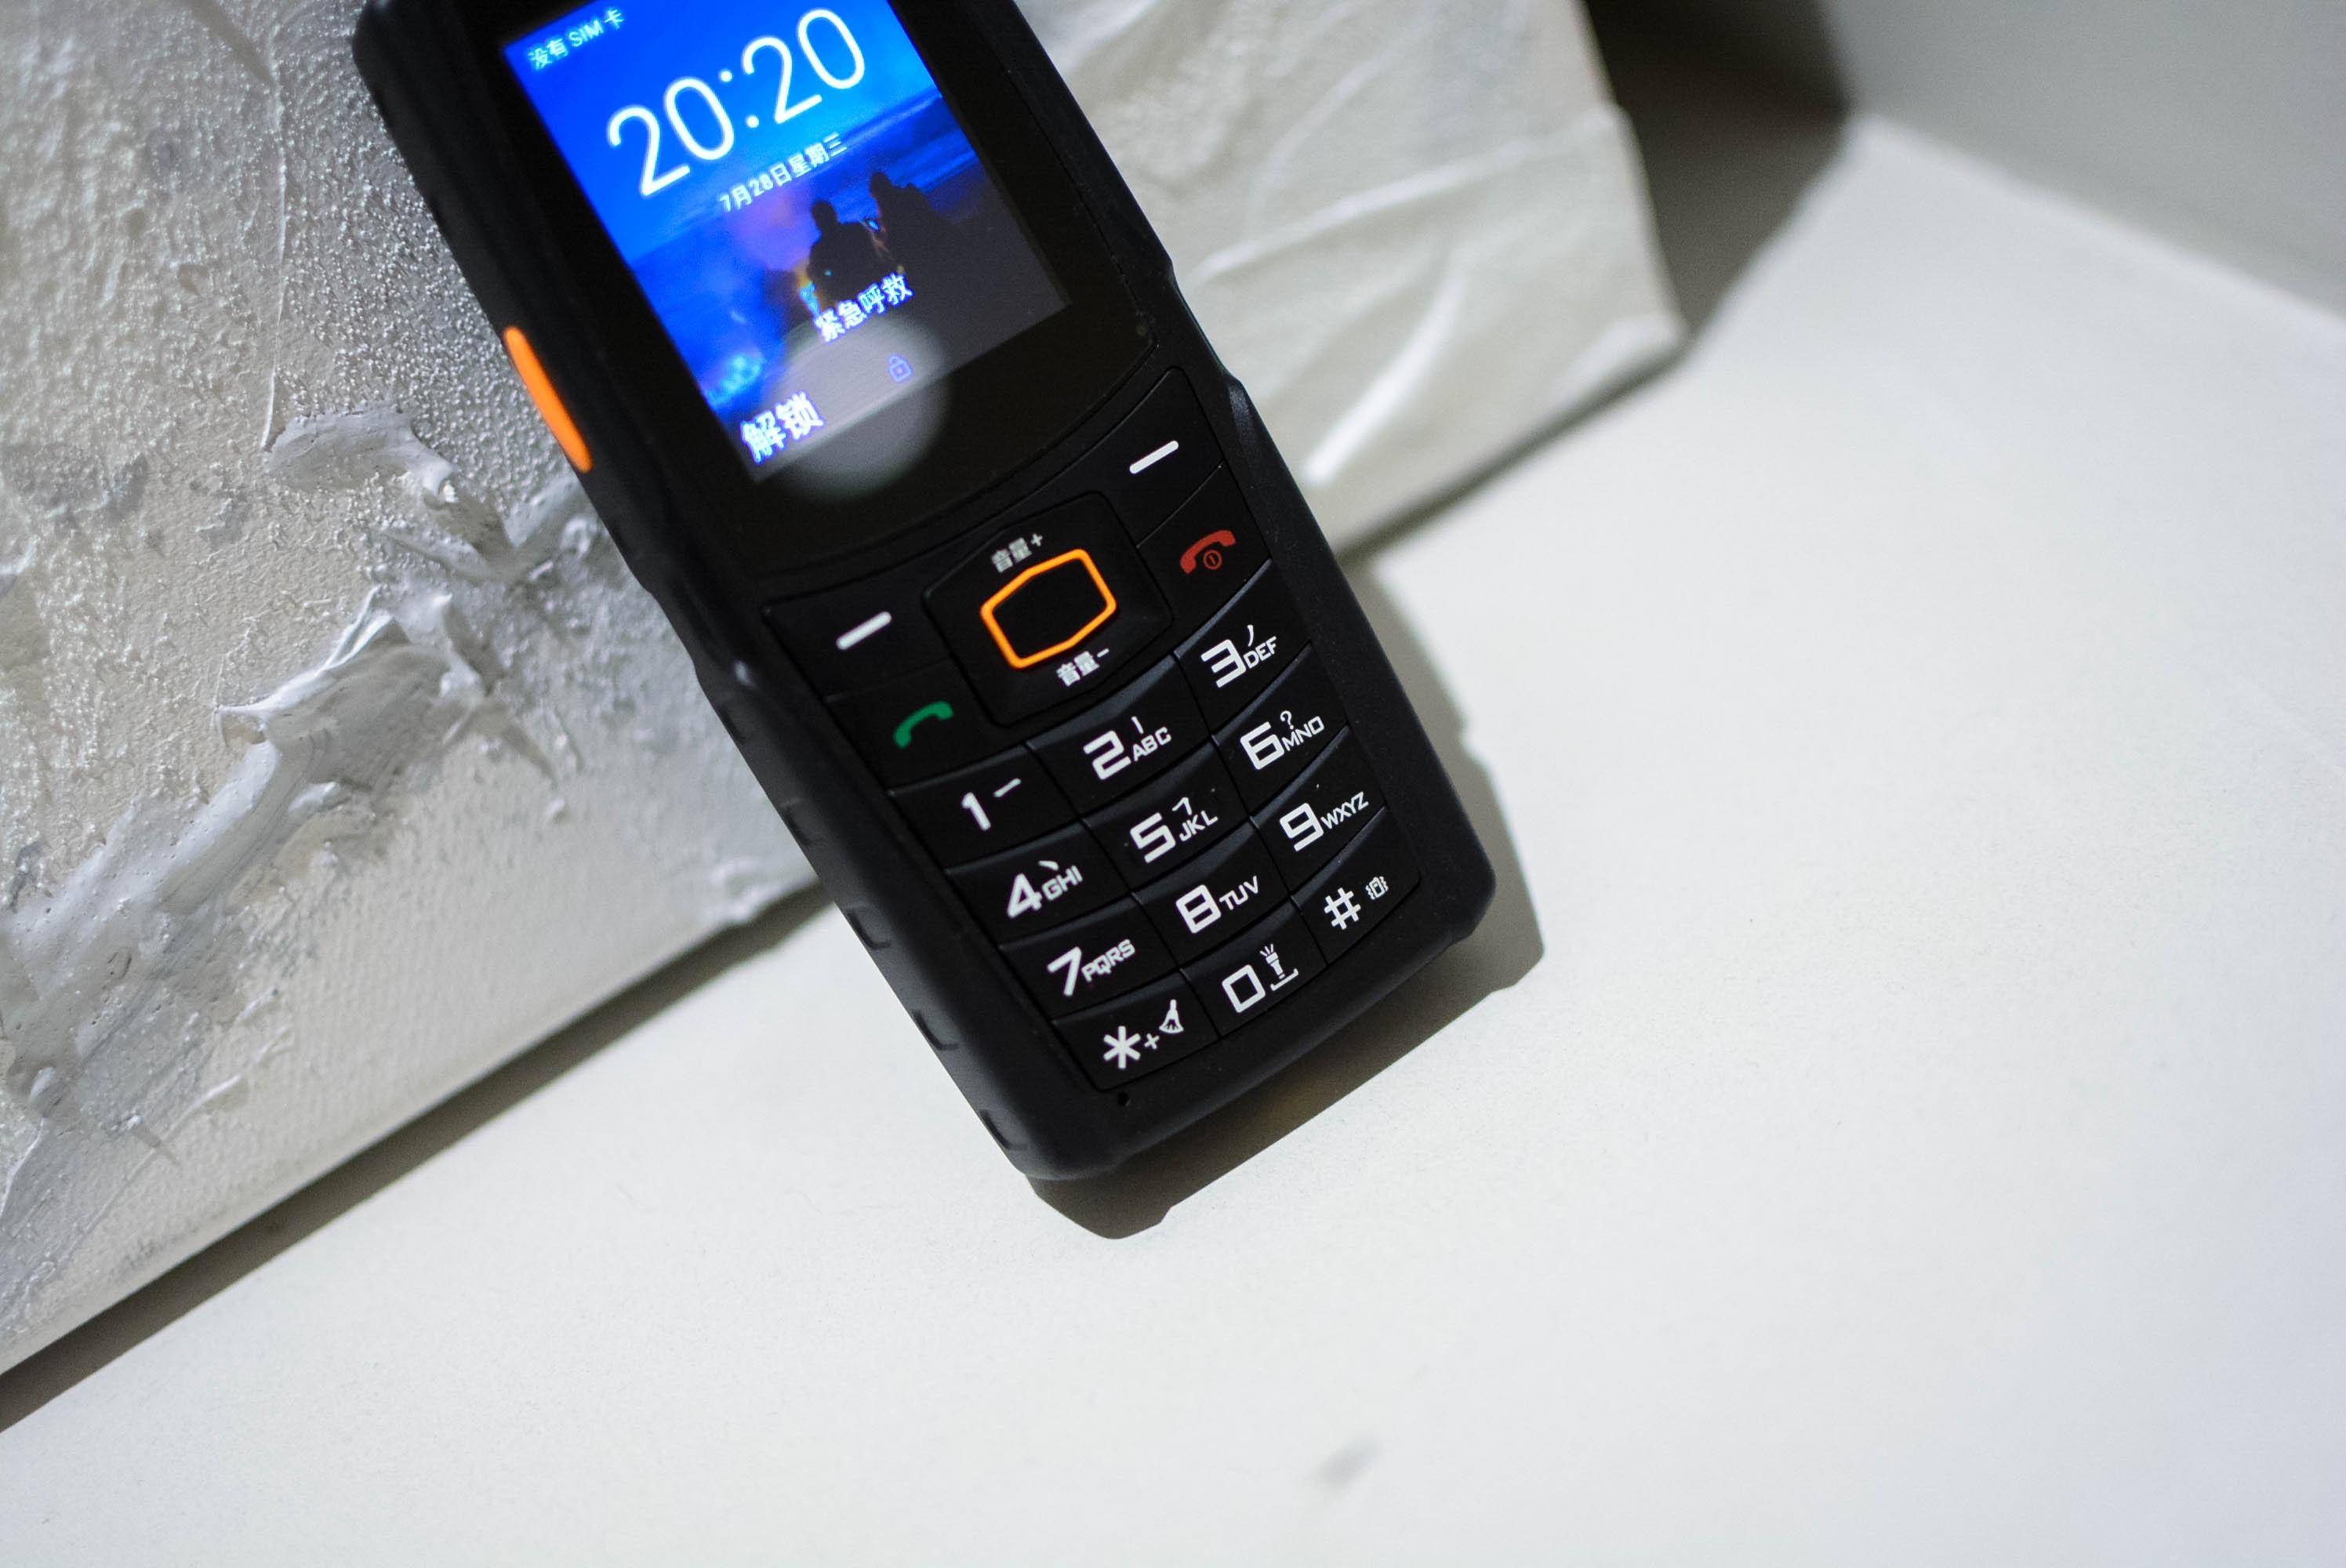 agm重新发布了一款大哥大手机:agm m7,按键 触屏 三防不足600元